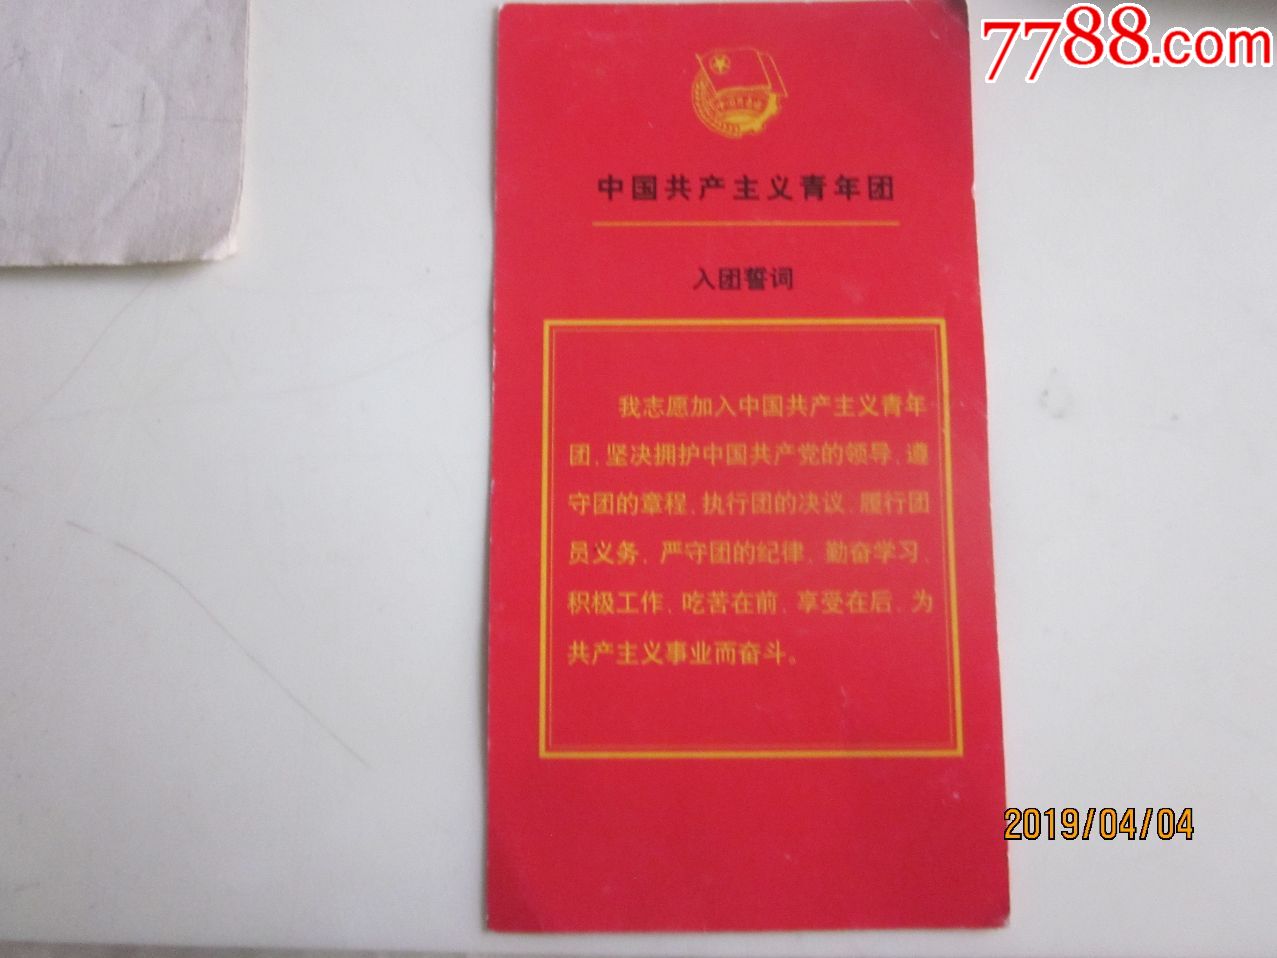 中国共产主义青年团入团誓词(背代团歌)!请看图